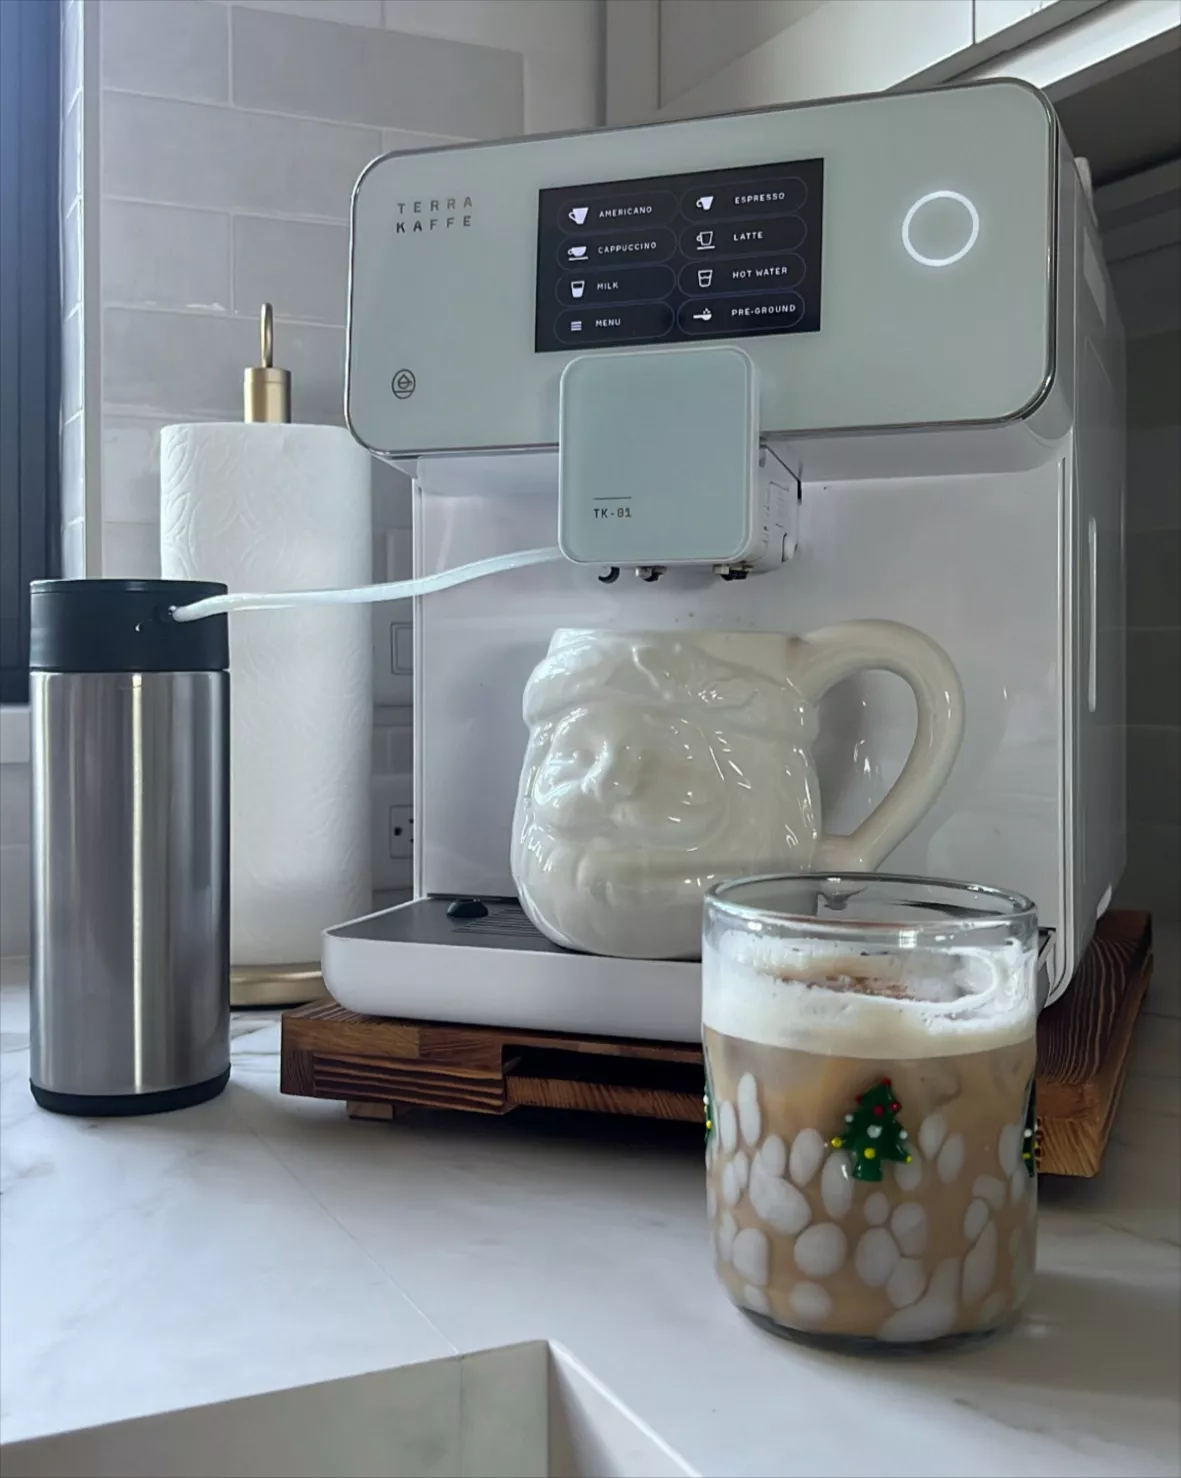 How To Make Tea Using An Espresso Machine